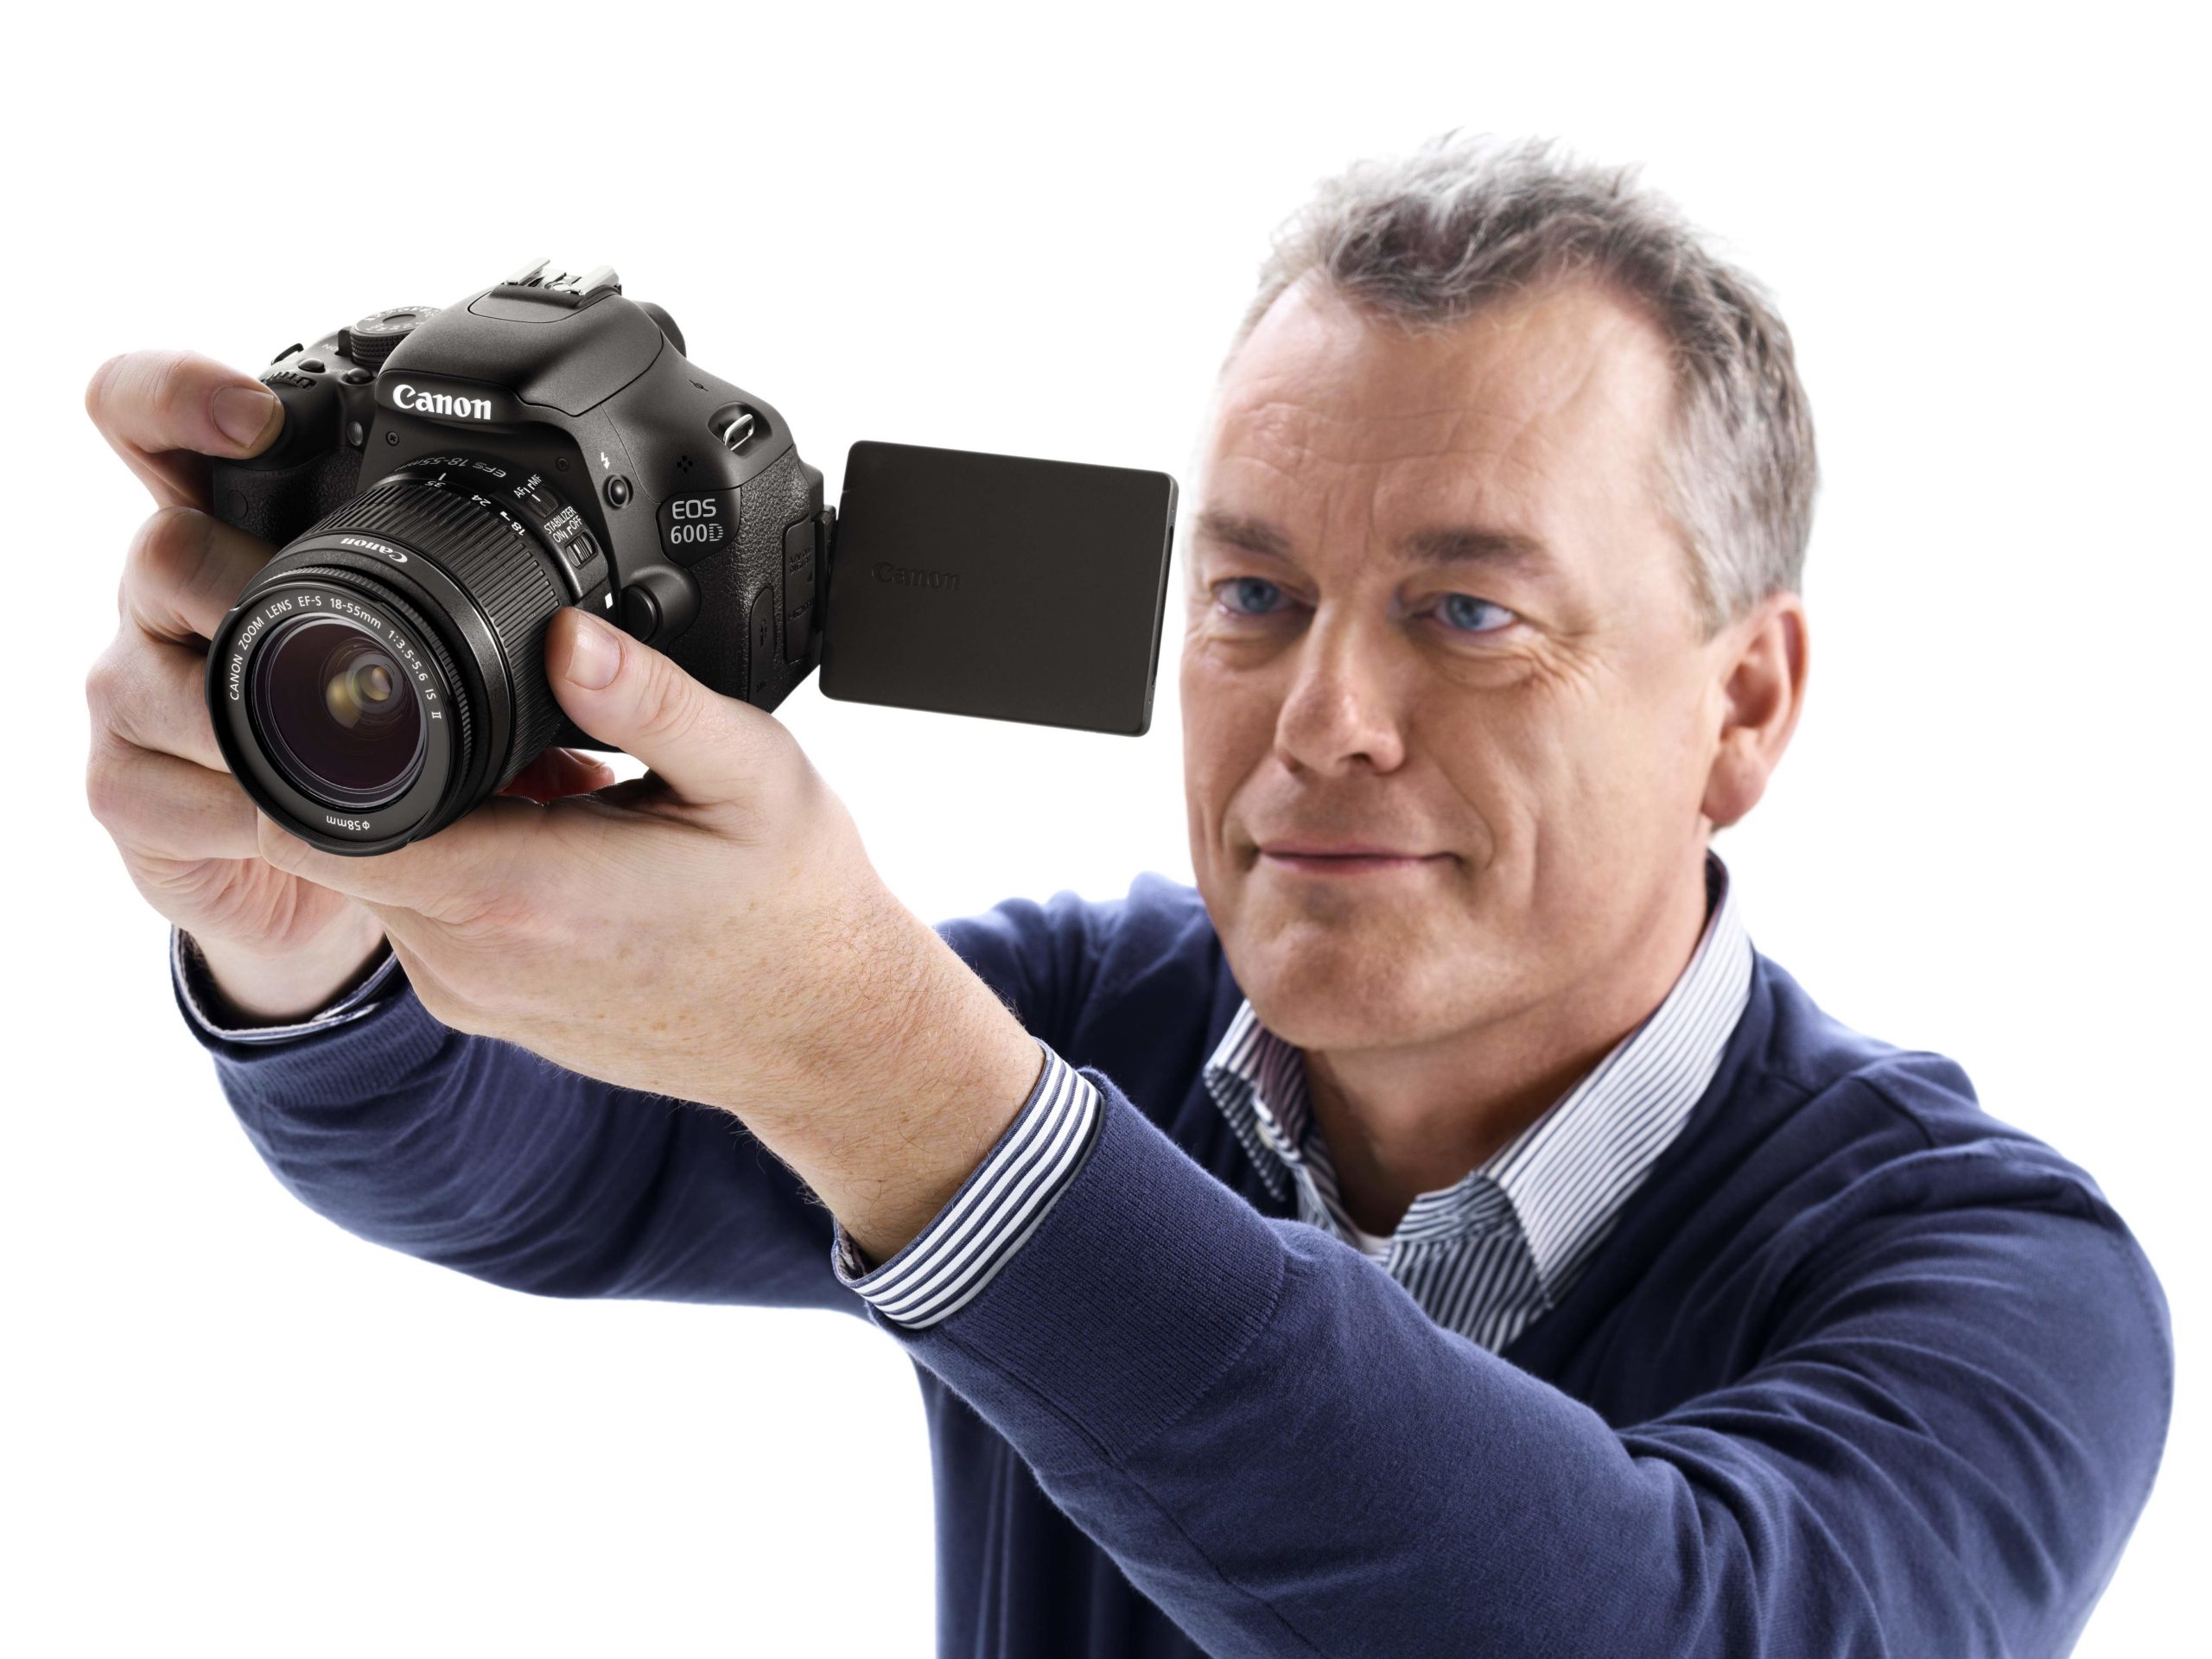 Máy ảnh Canon 600D là sự lựa chọn tuyệt vời cho những người đam mê nhiếp ảnh. Với màn hình LCD 3 inch, khả năng chụp ảnh liên tục 3,7 hình/giây và tính năng xử lý hình ảnh DIGIC 4, bạn sẽ có được những bức ảnh tuyệt đẹp và chân thực. 